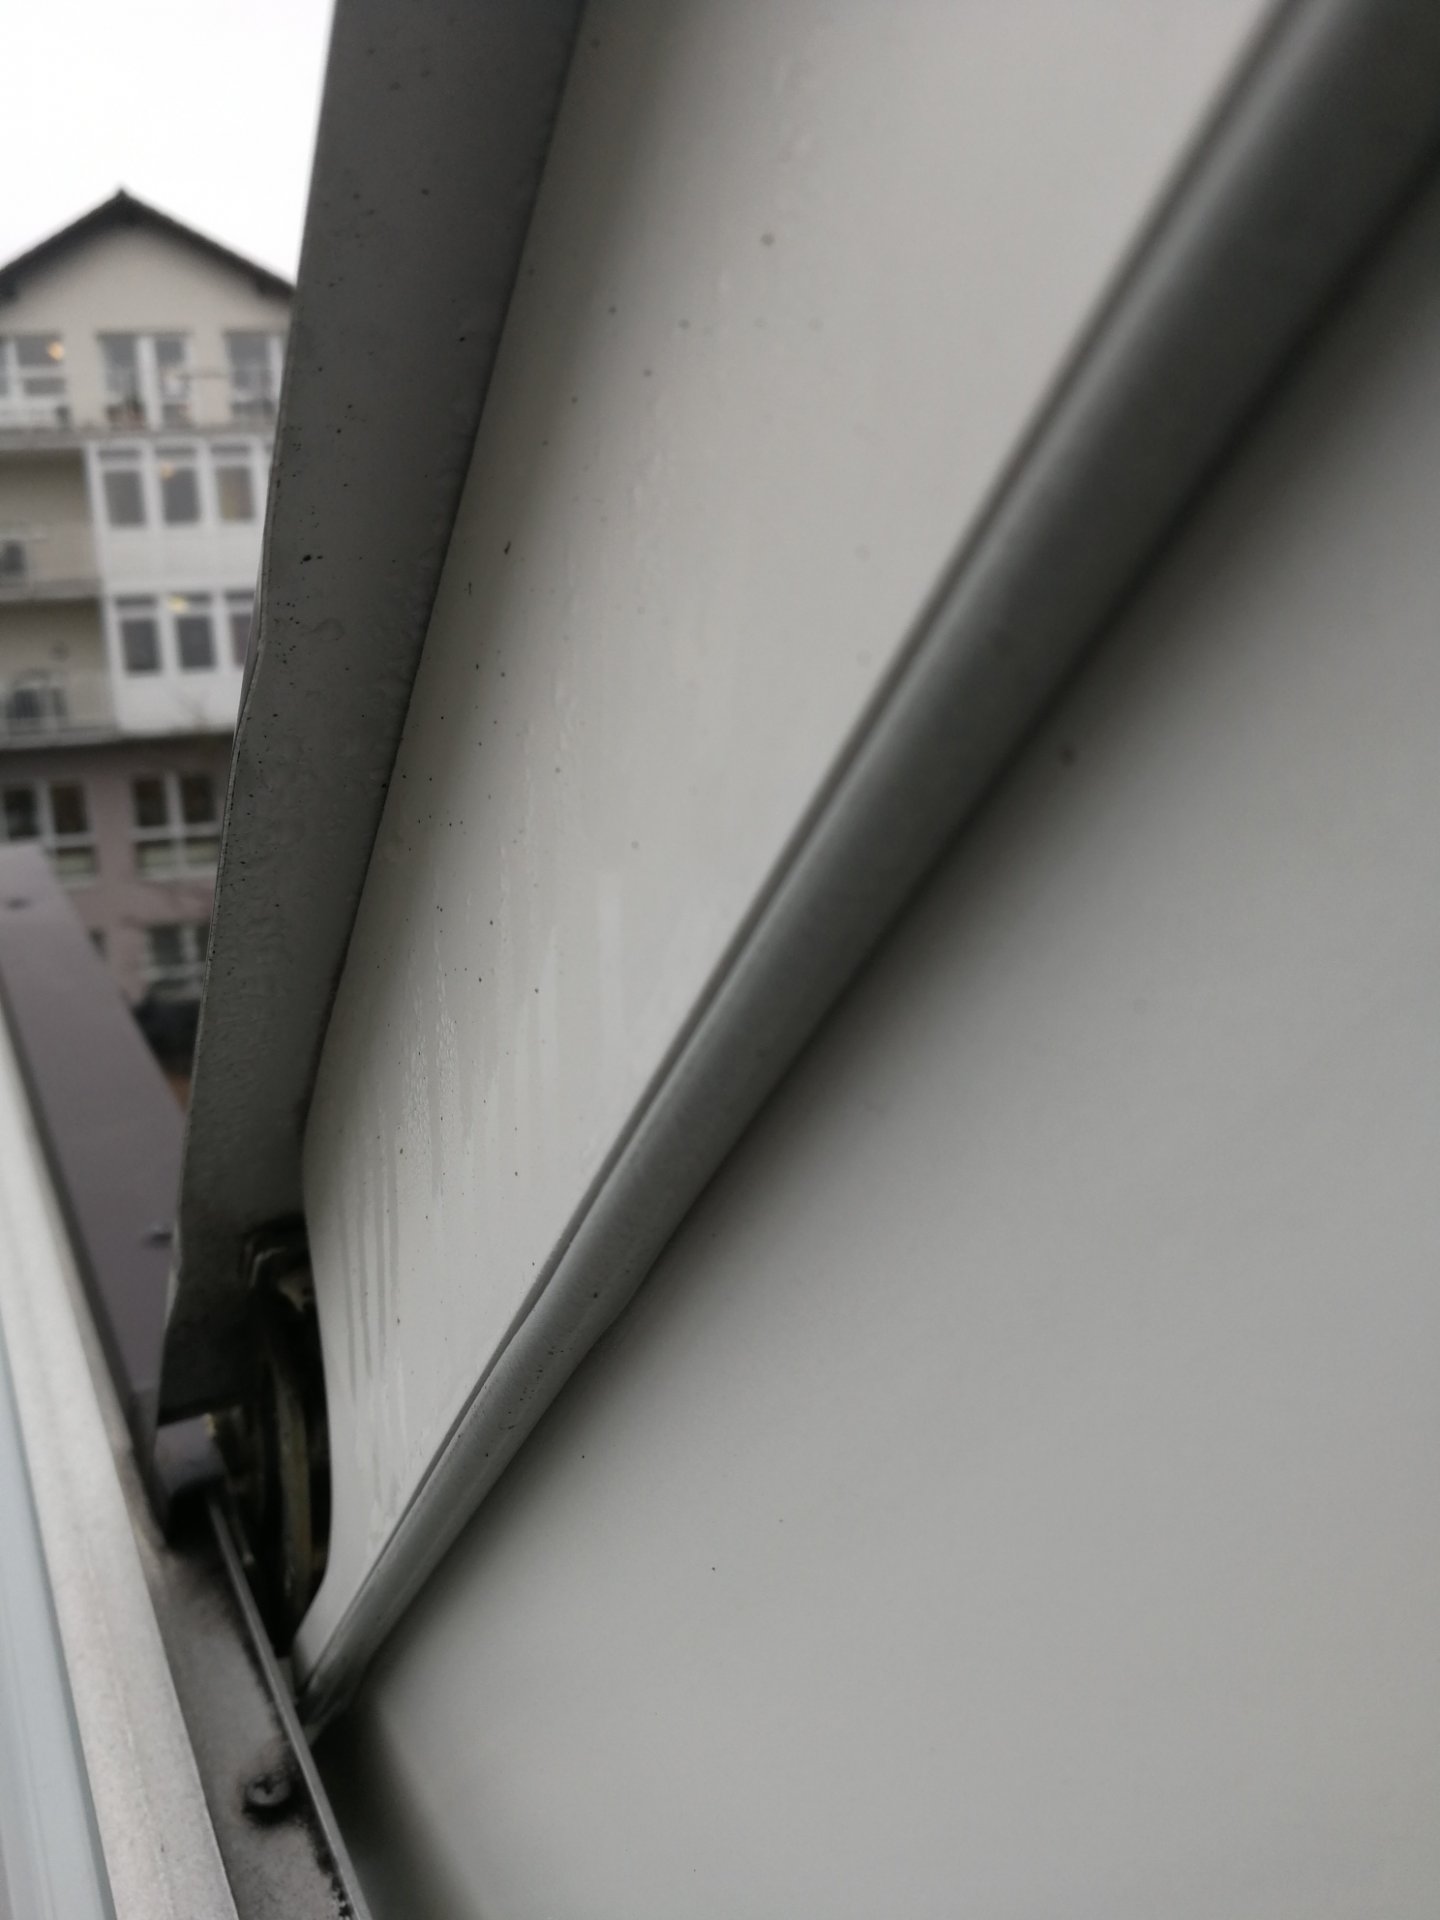 Velux Dachflächenfenster undicht / Kondensateinbruch